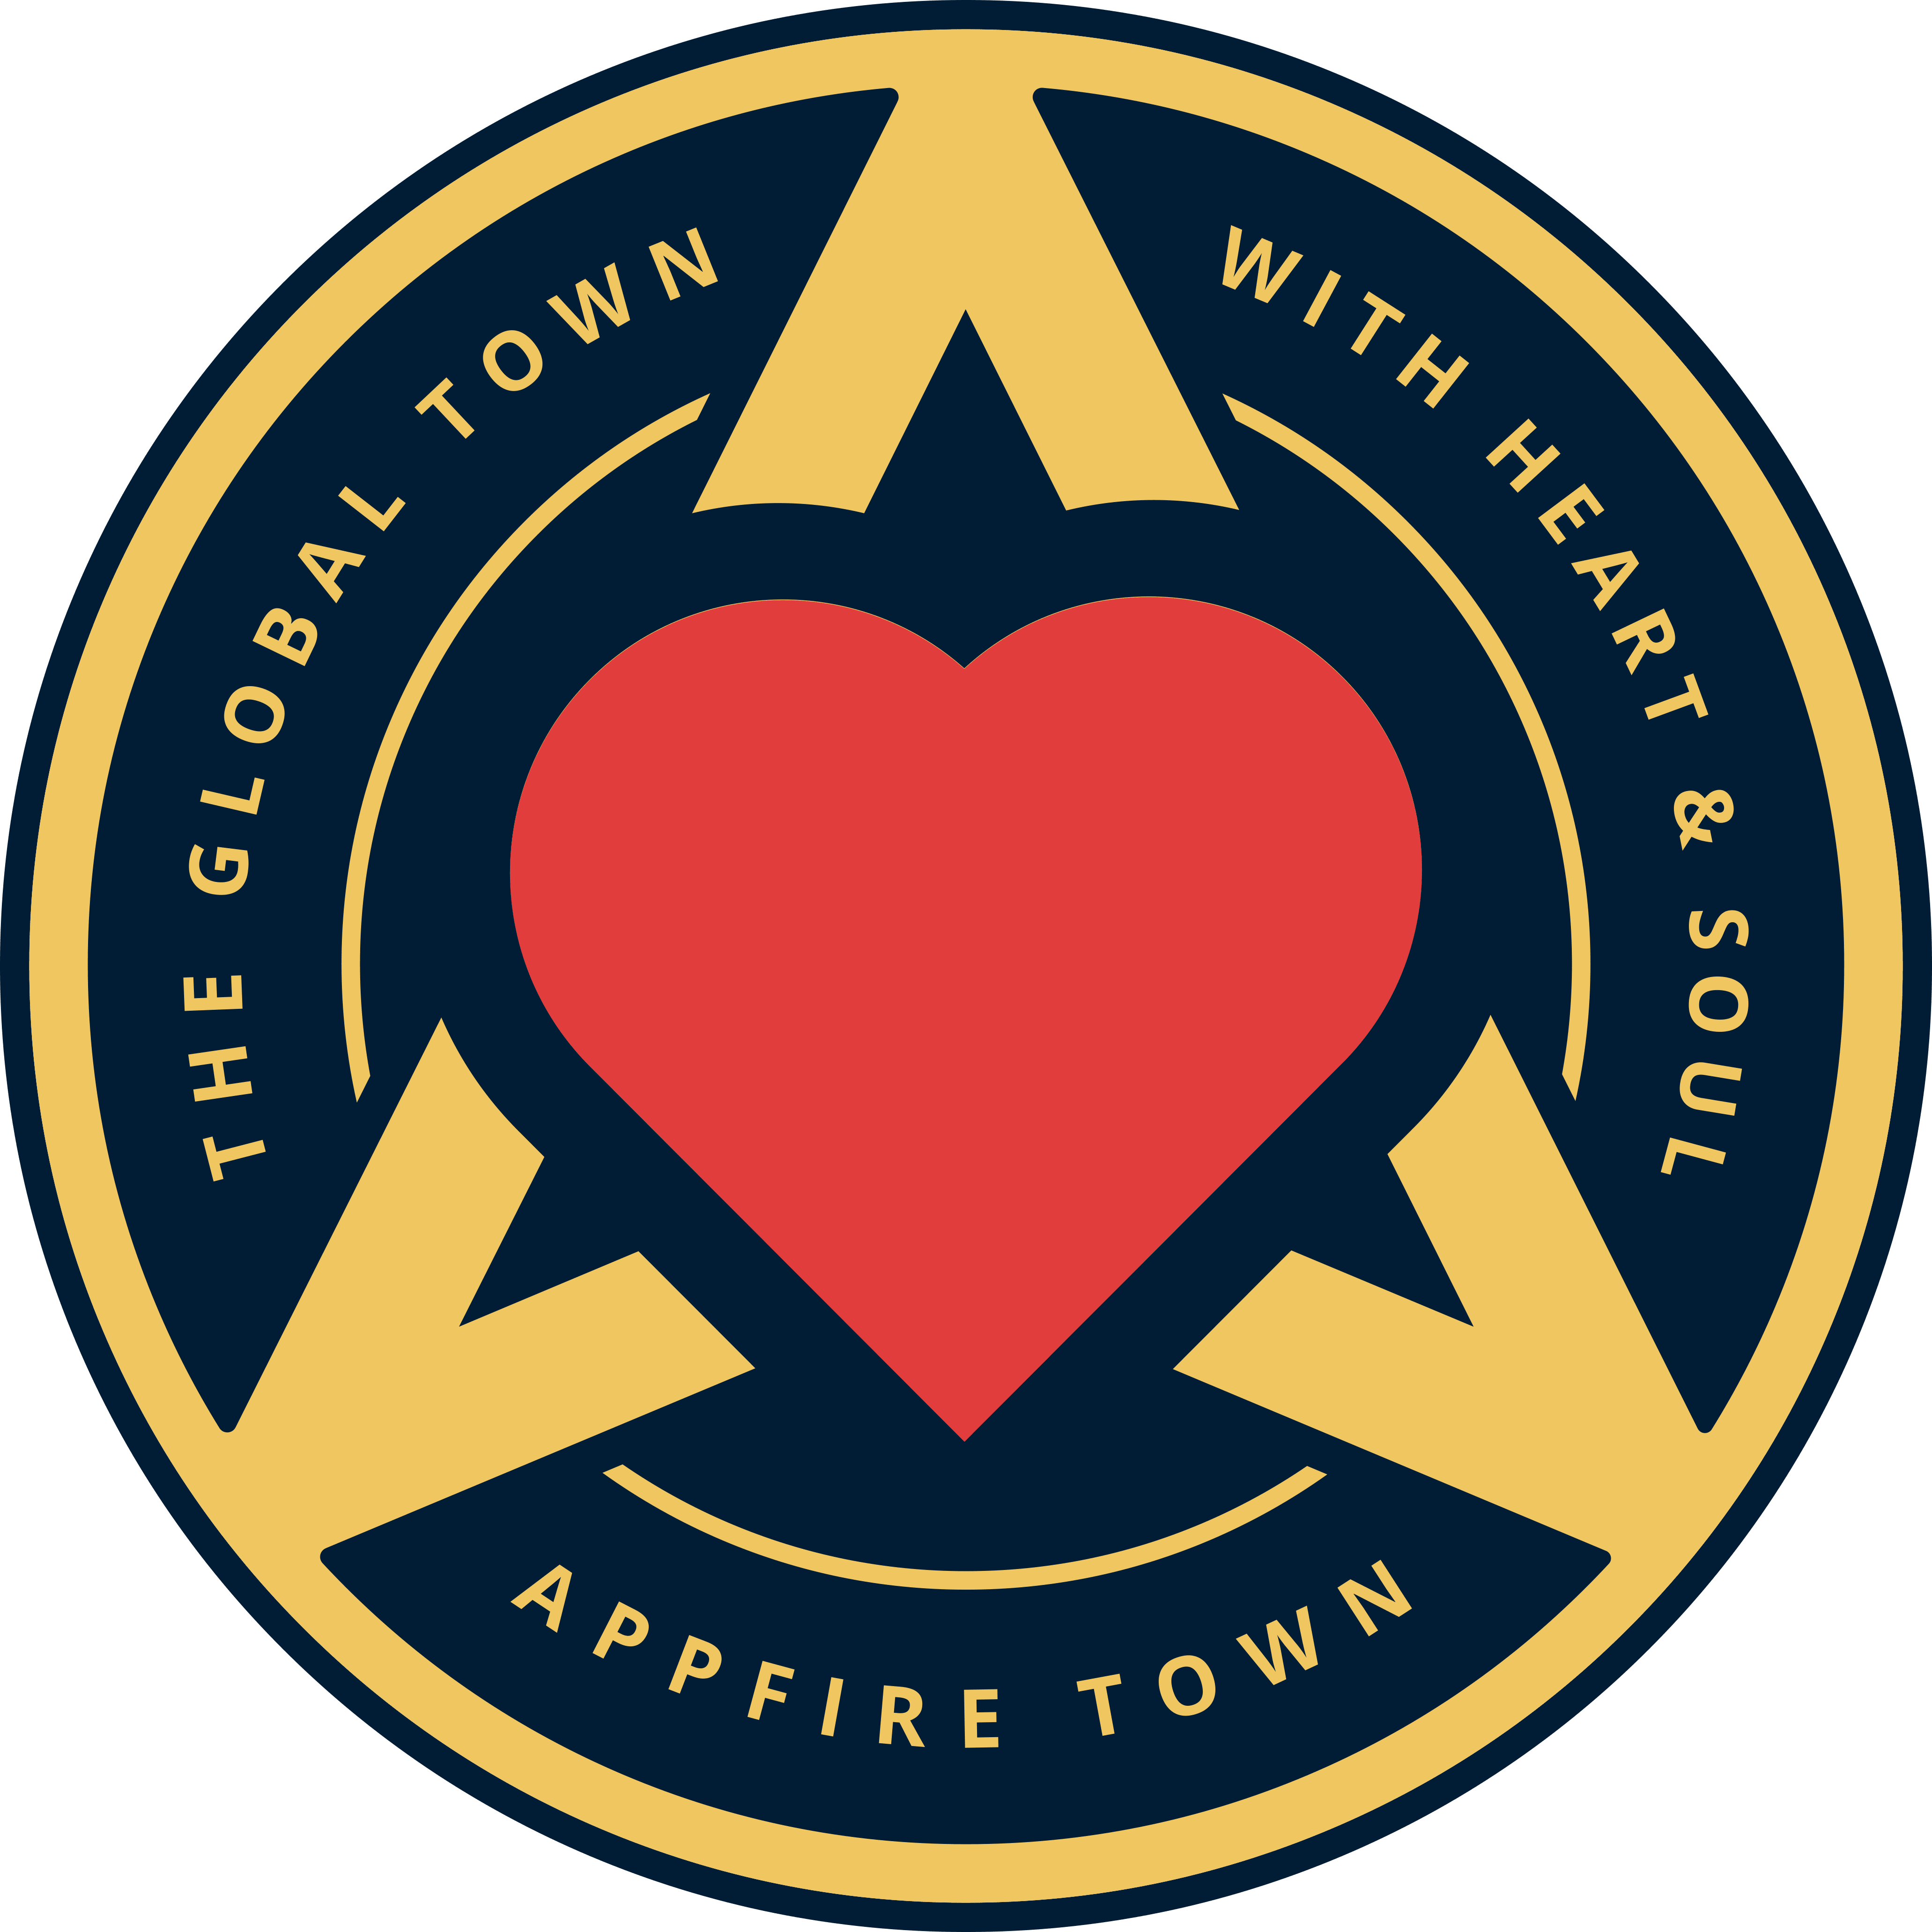 Appfire Town logo